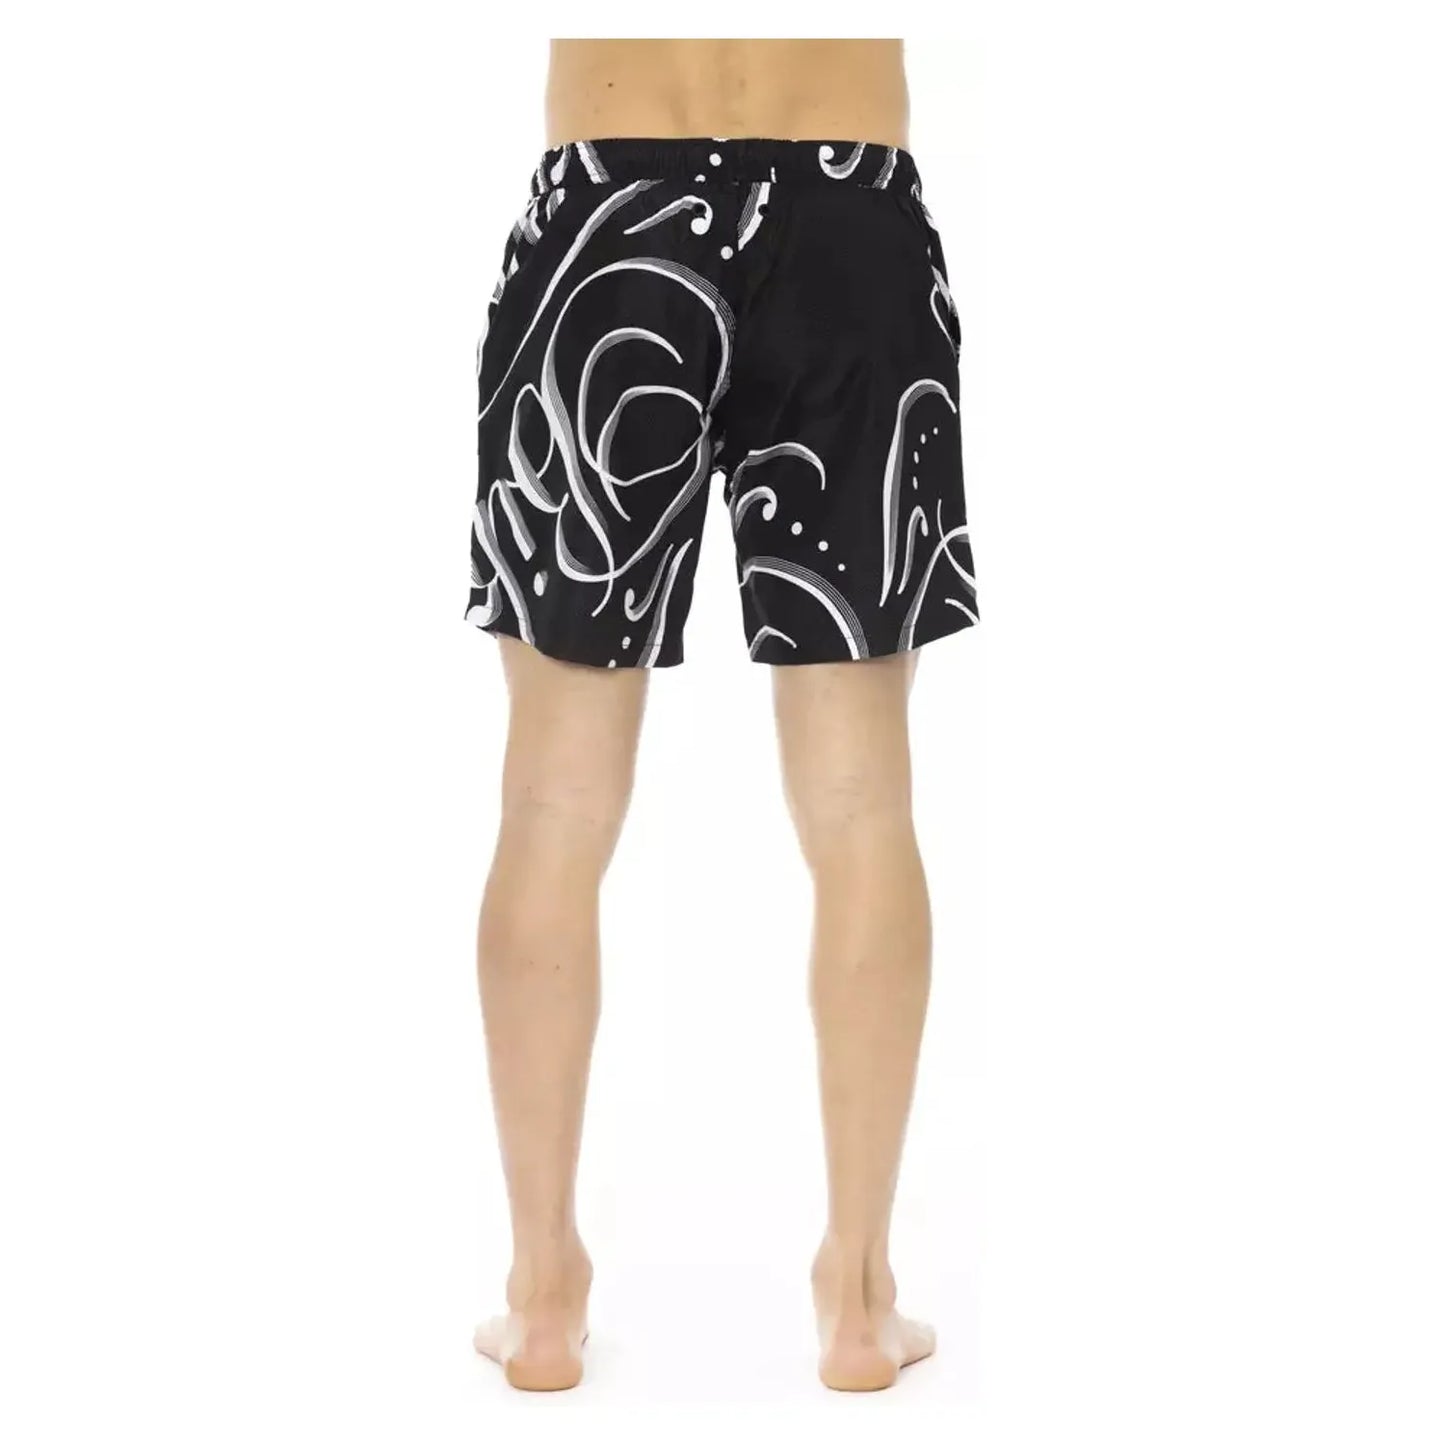 Bikkembergs Sleek All-over Print Men's Swim Shorts black-polyester-swimwear-26